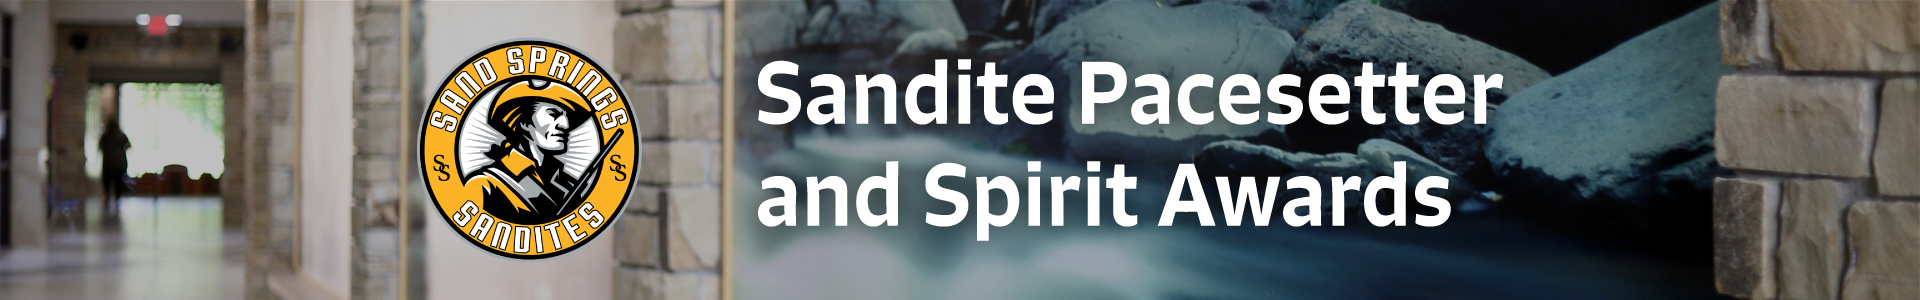 Sandite Pacesetter and Spirit Awards